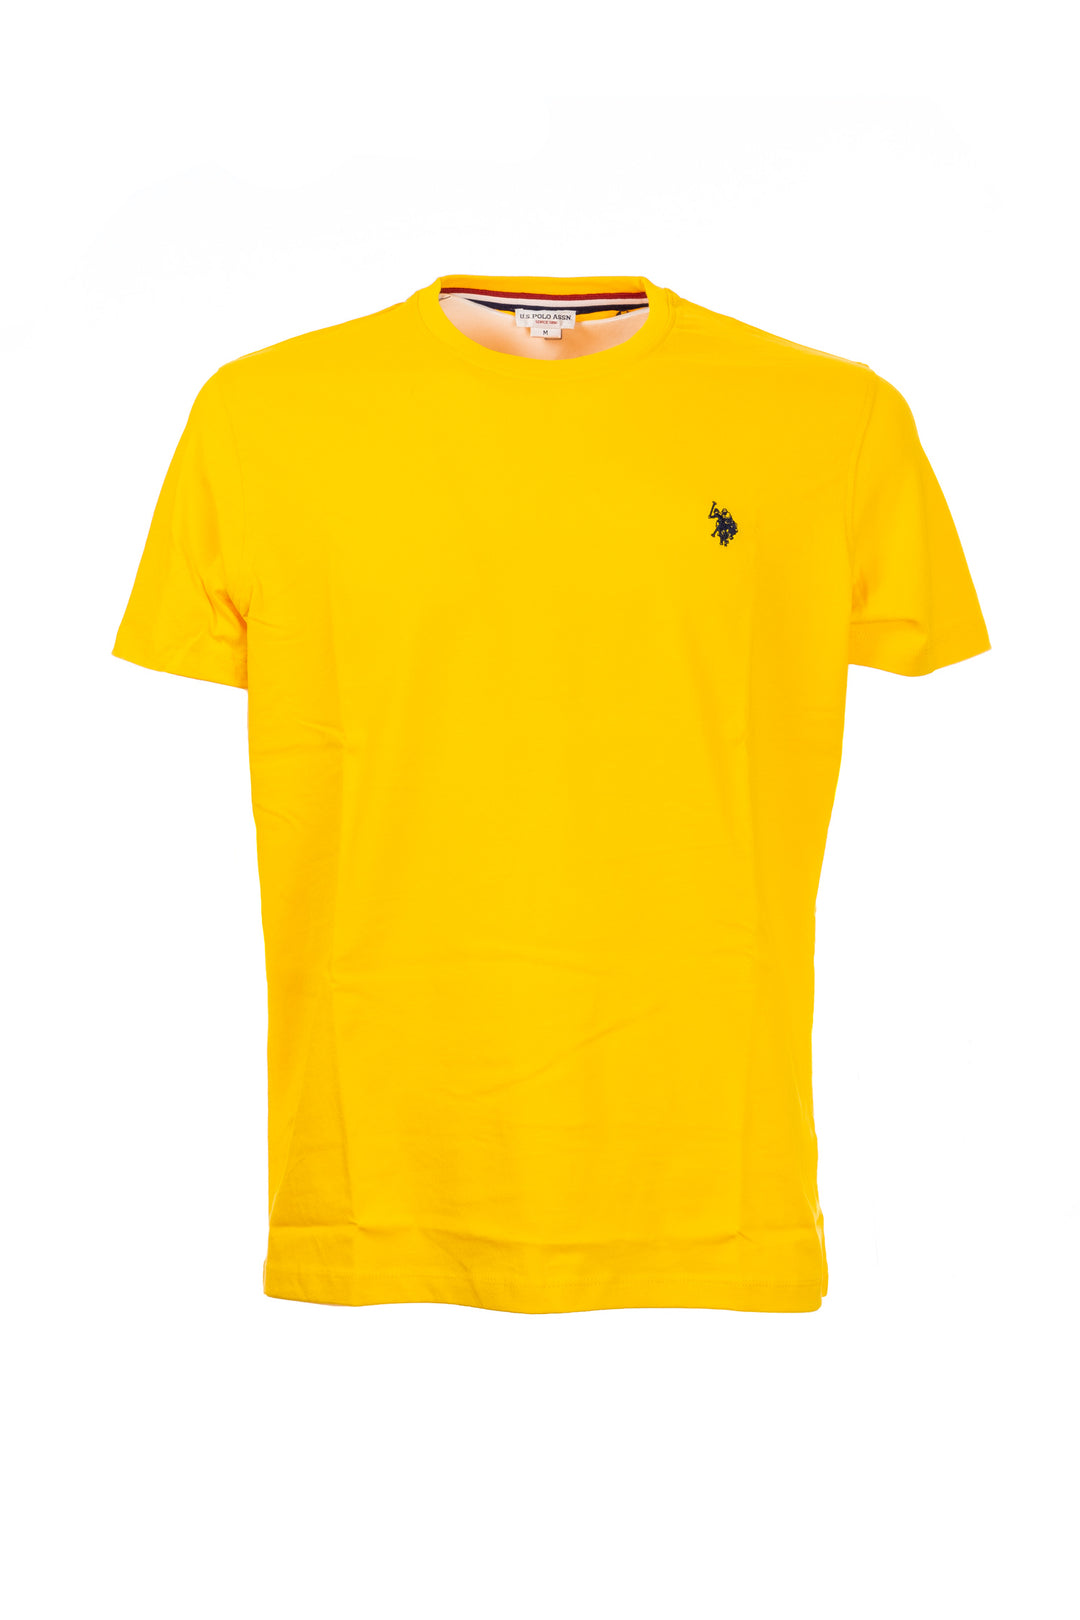 U.S. POLO ASSN. T-shirt gialla in cotone con logo ricamato sul petto - Mancinelli 1954